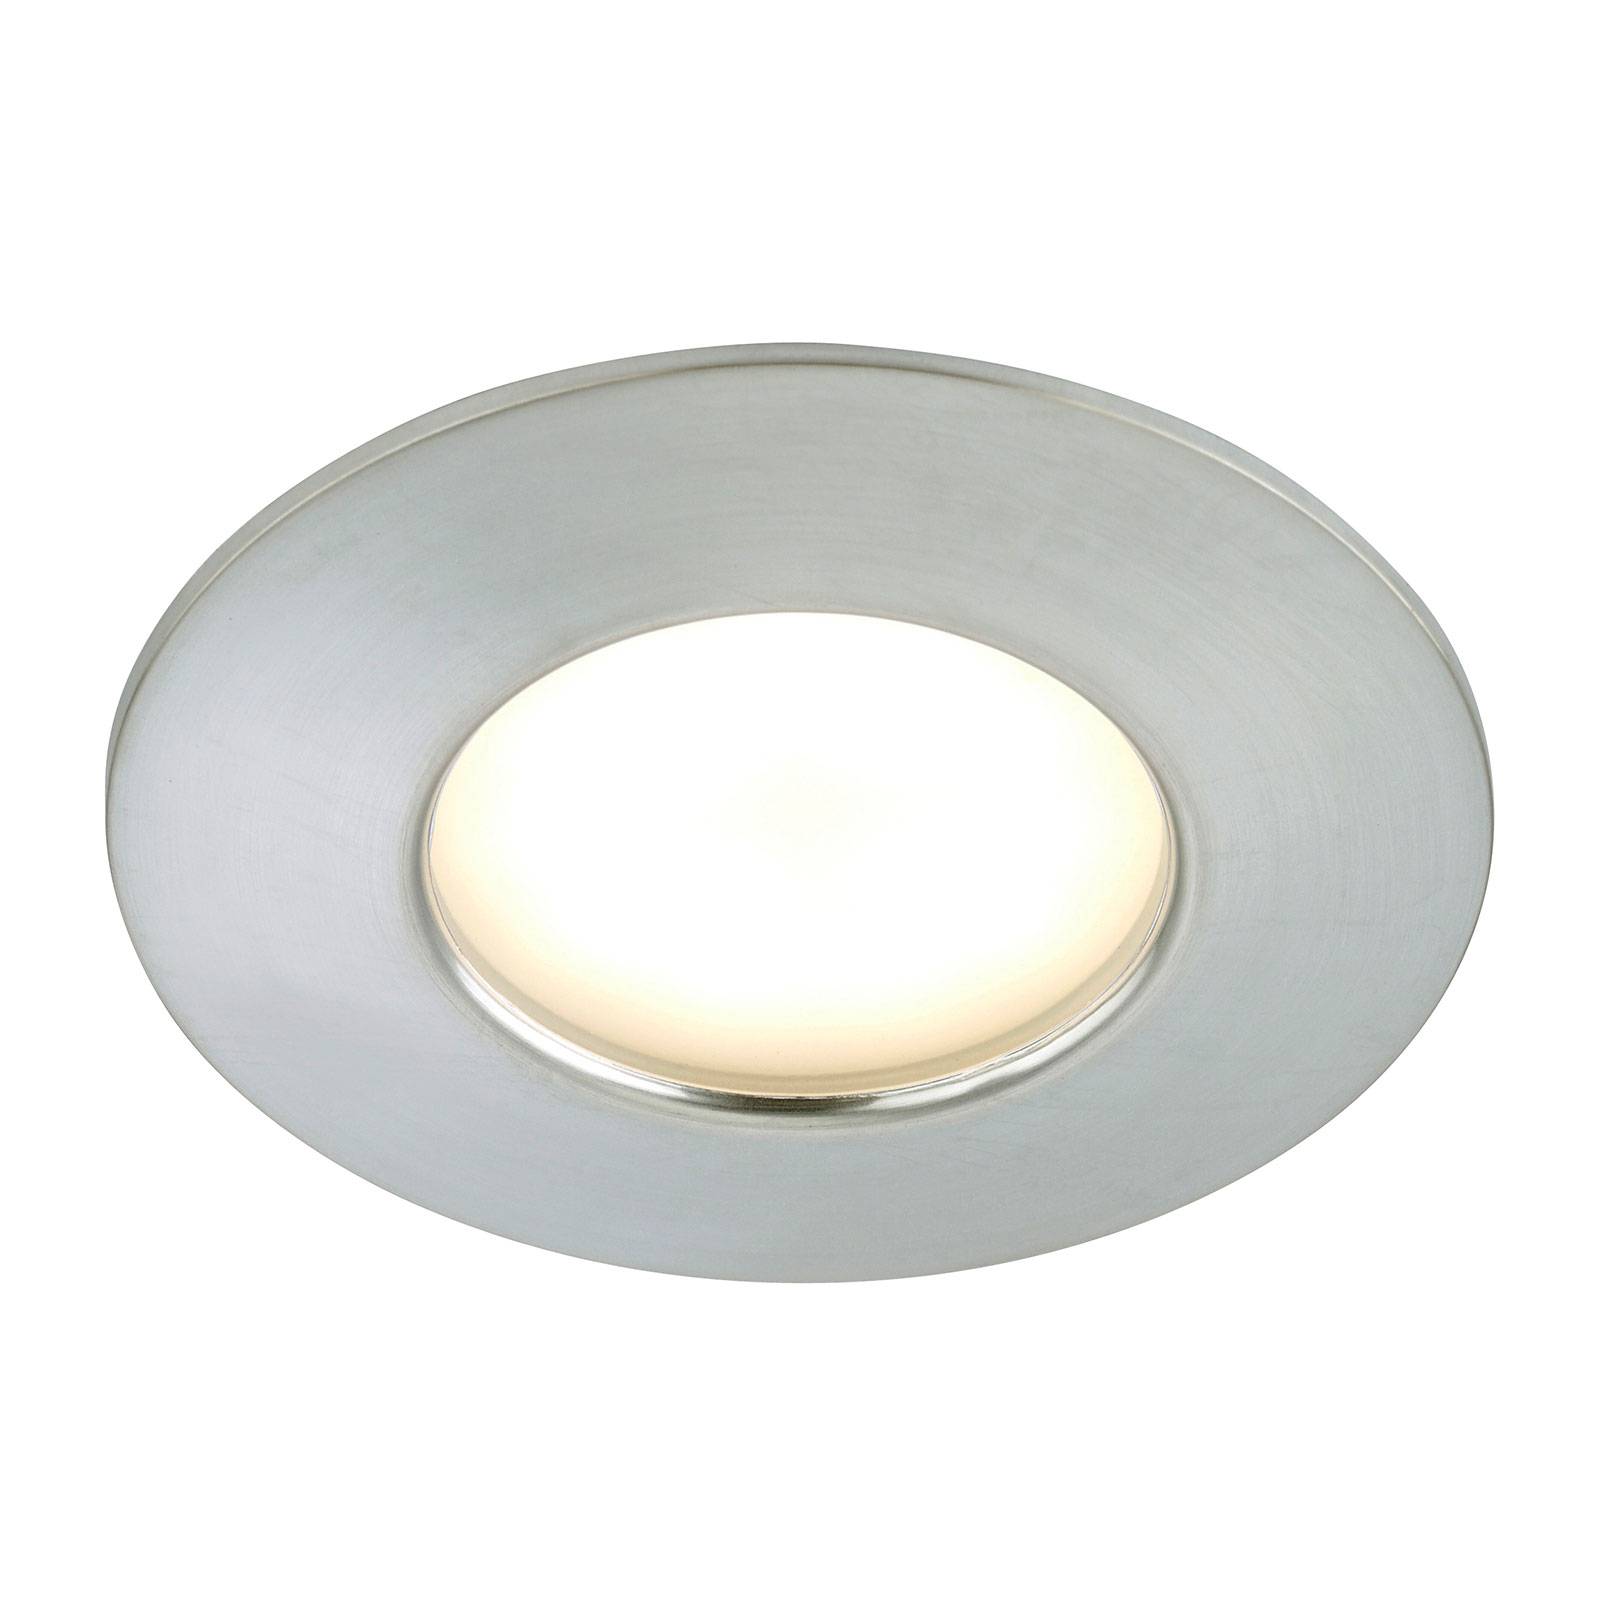 Spot LED Felia color alluminio, IP44